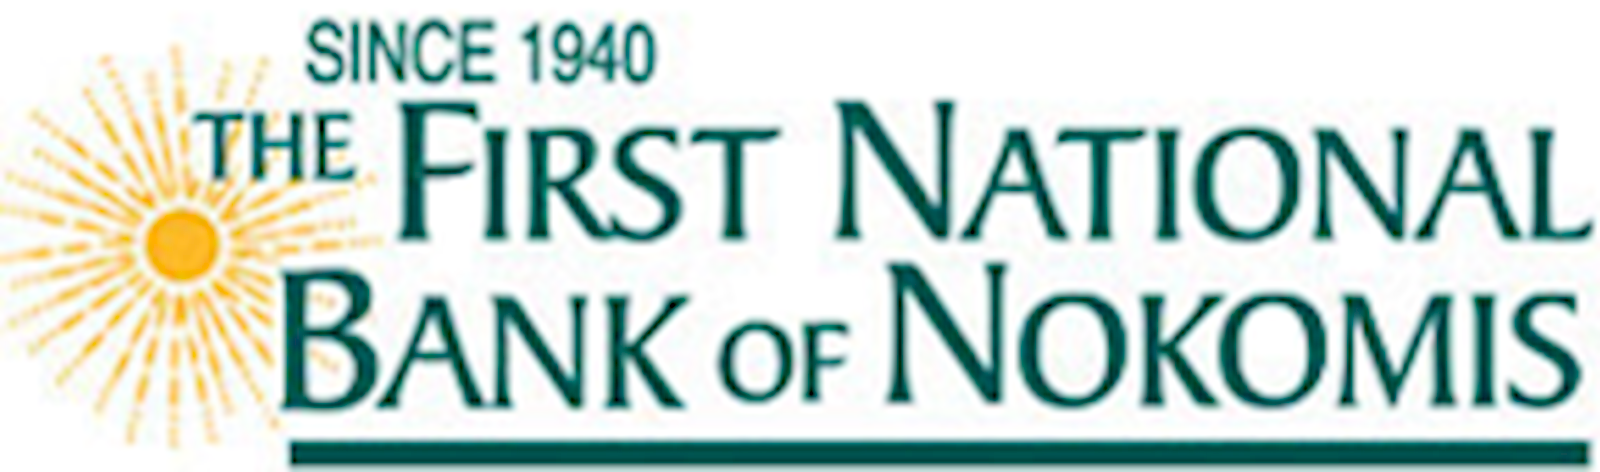 First National Bank of Nokomis.png